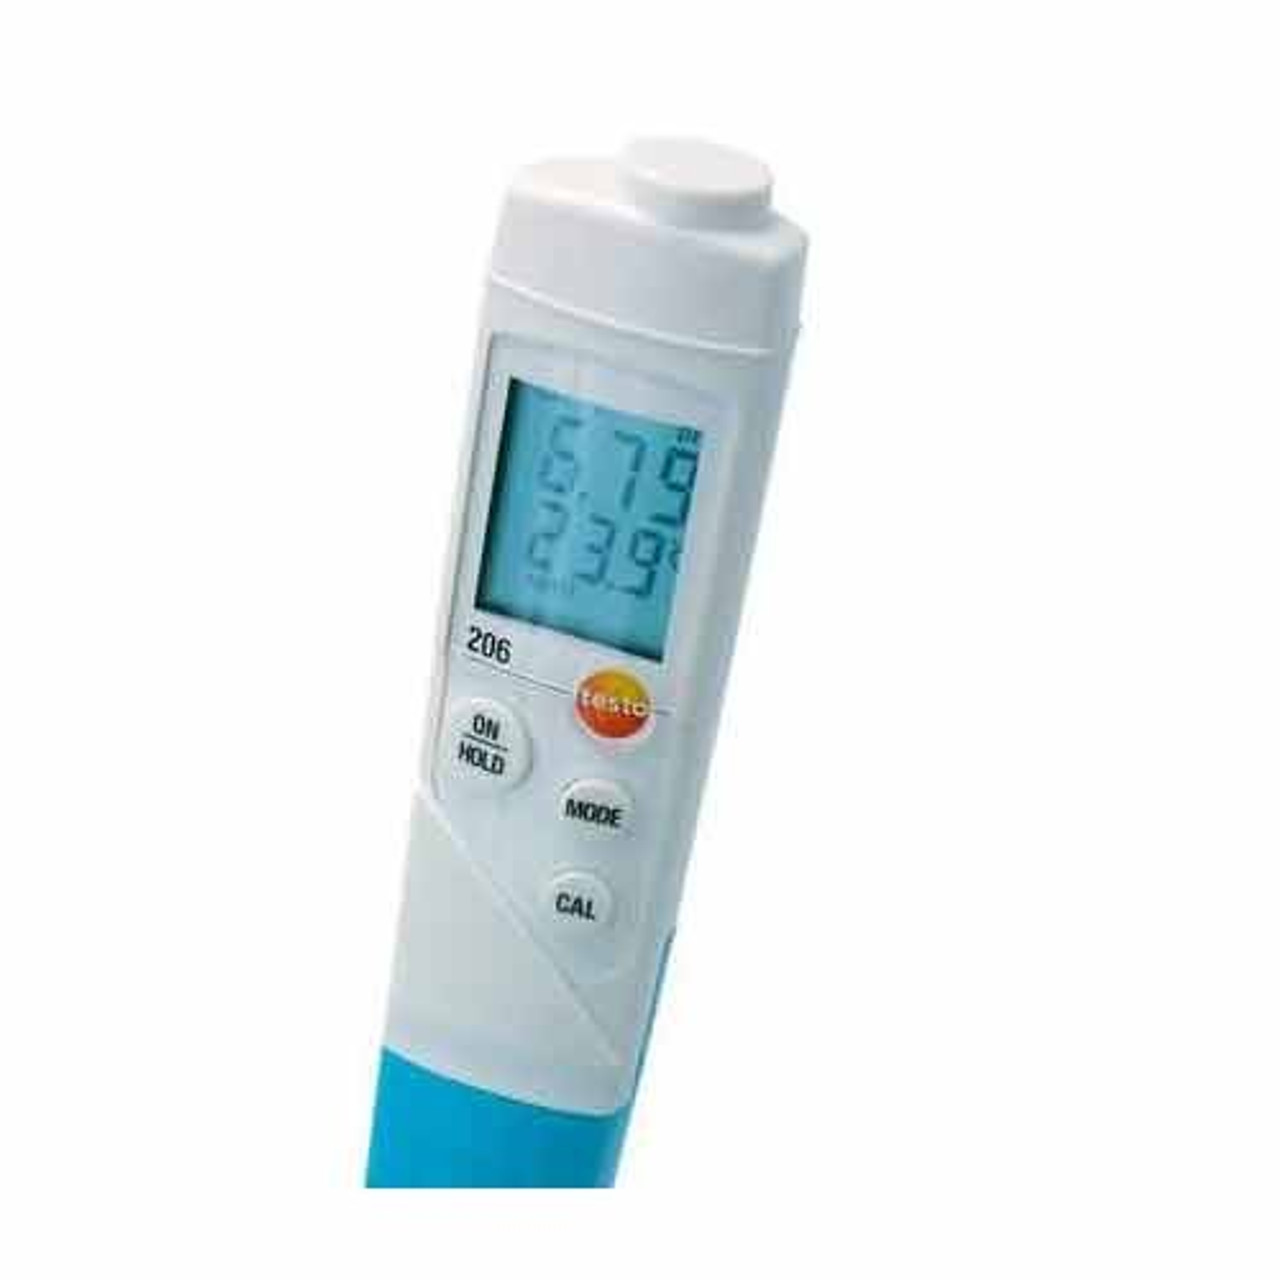 pH- / Temperatur-Messgerät Testo 206-pH2